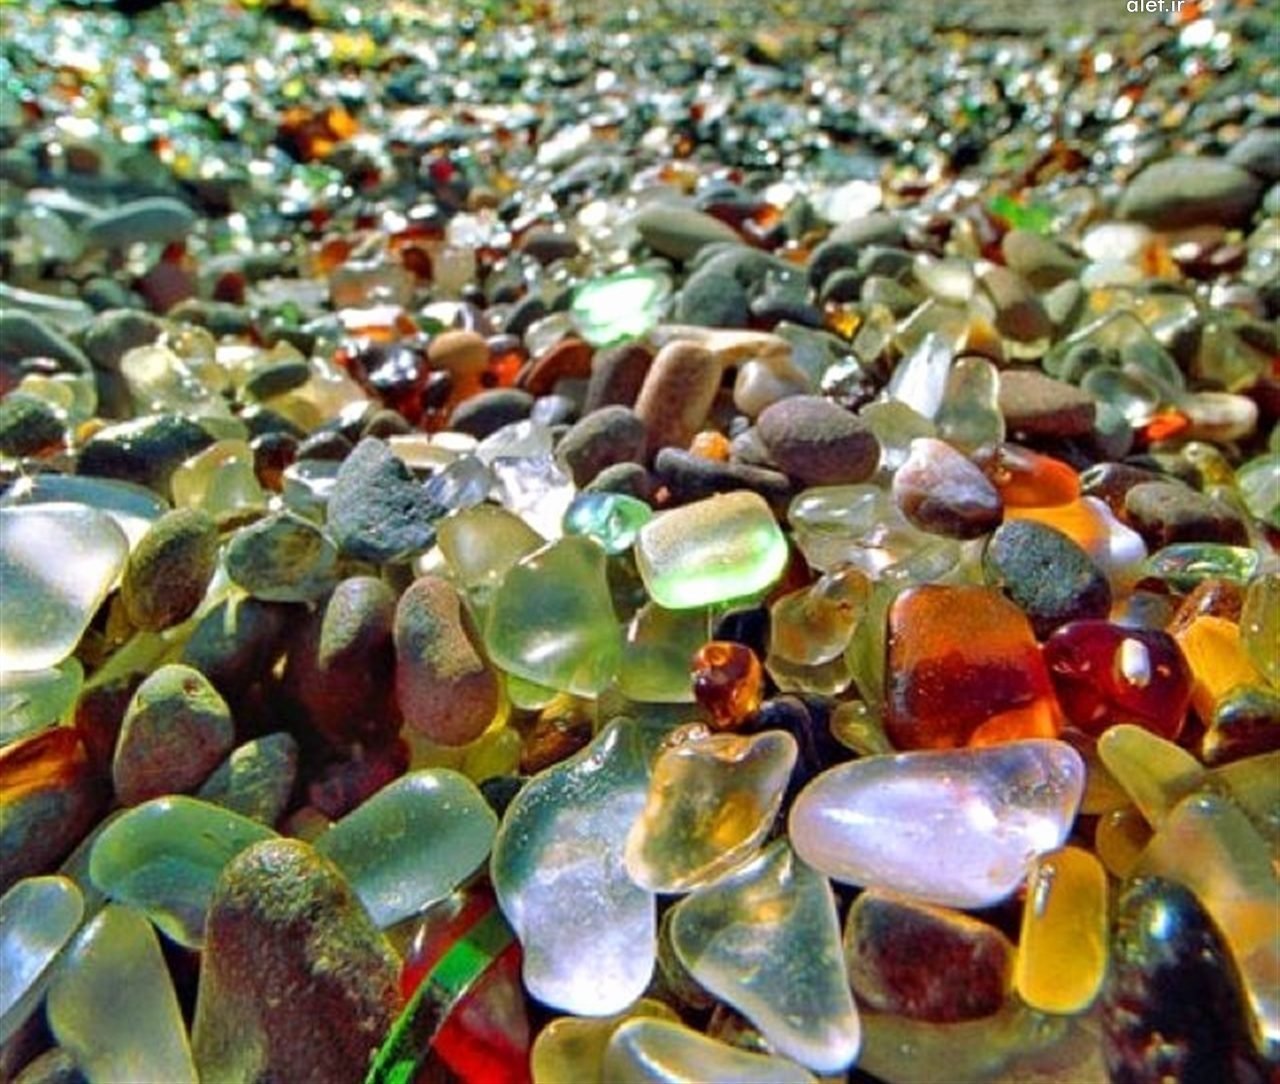 красивые камни на берегу моря